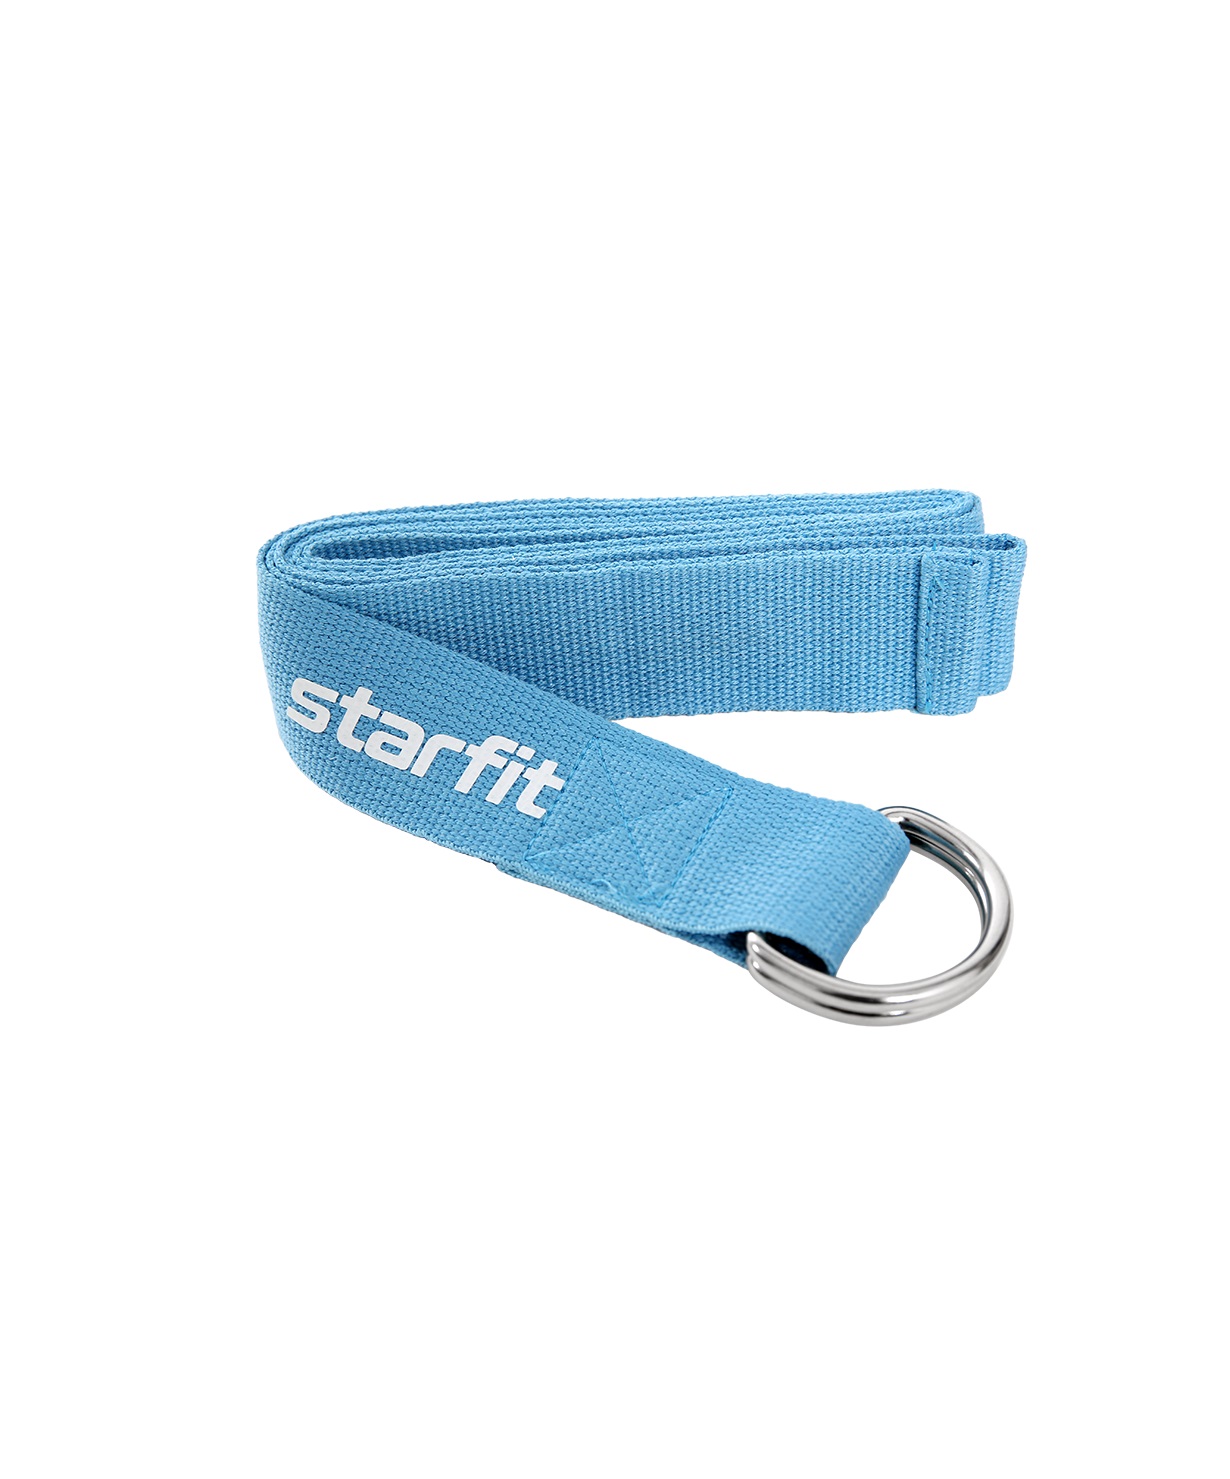 фото Ремень для йоги starfit core yb-100 186 см, хлопок, синий пастель